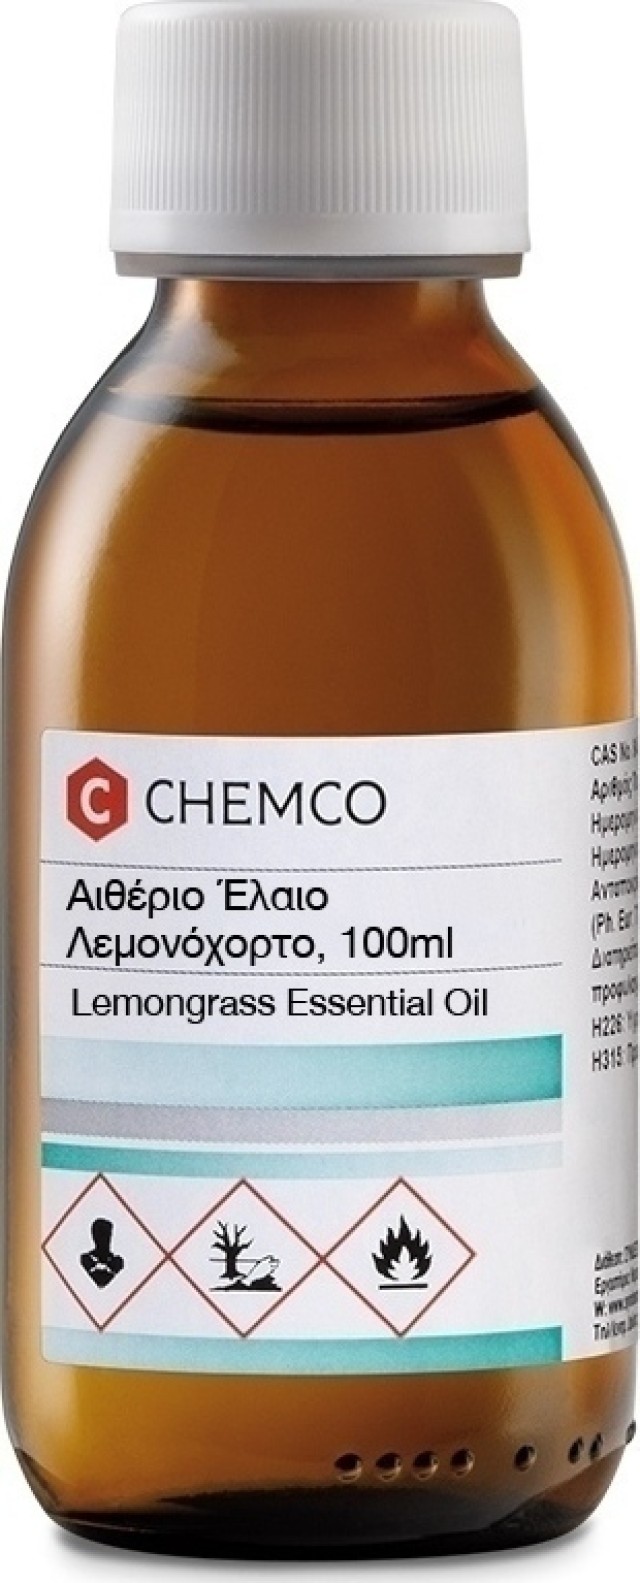 Chemco Αιθέριο Έλαιο Λεμονόχορτο 100ml